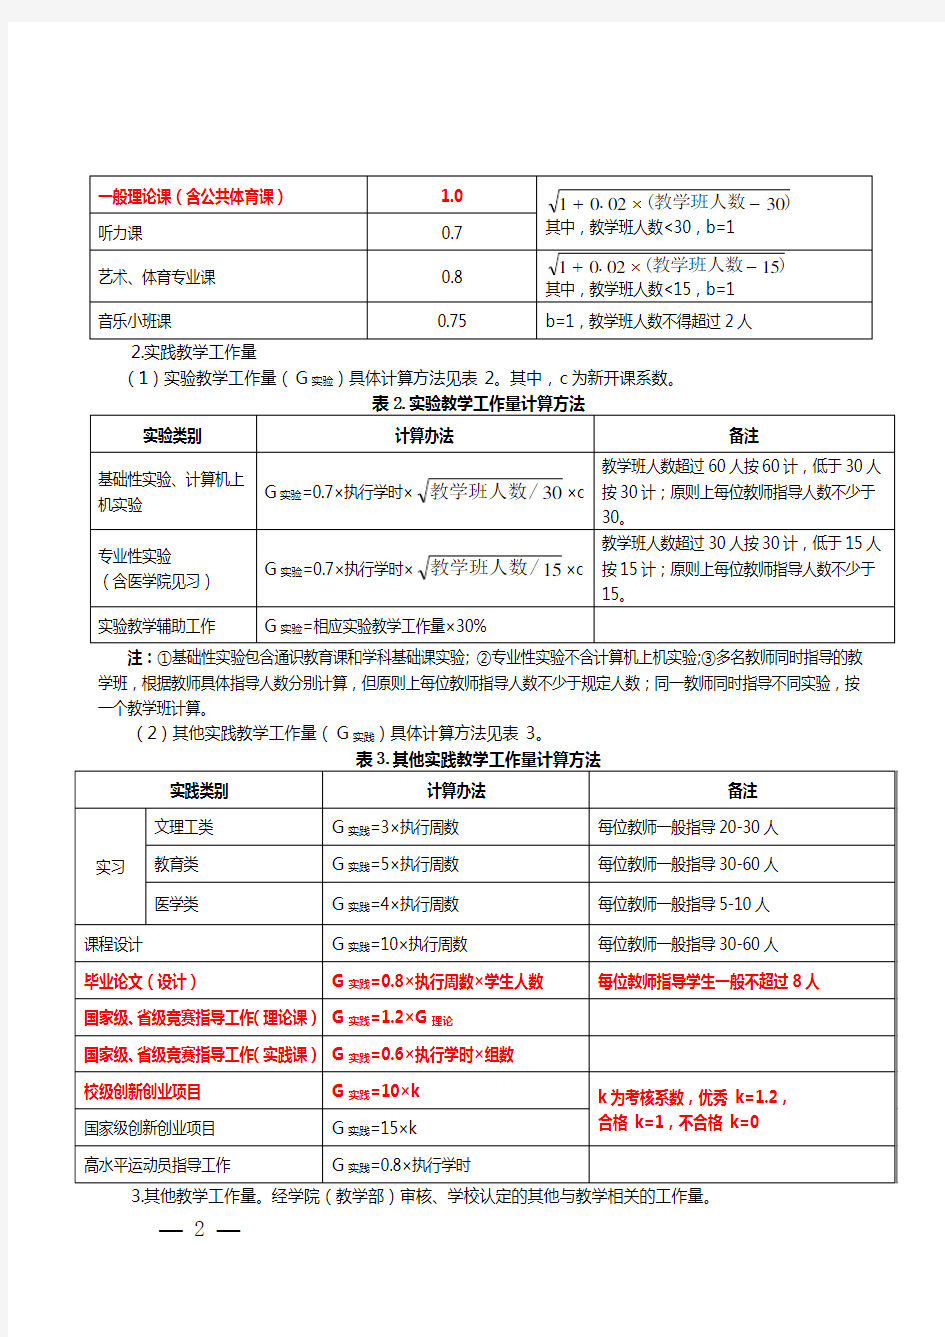 青岛大学教师教学工作量核定暂行规定-青大教字(2014)37号-201505